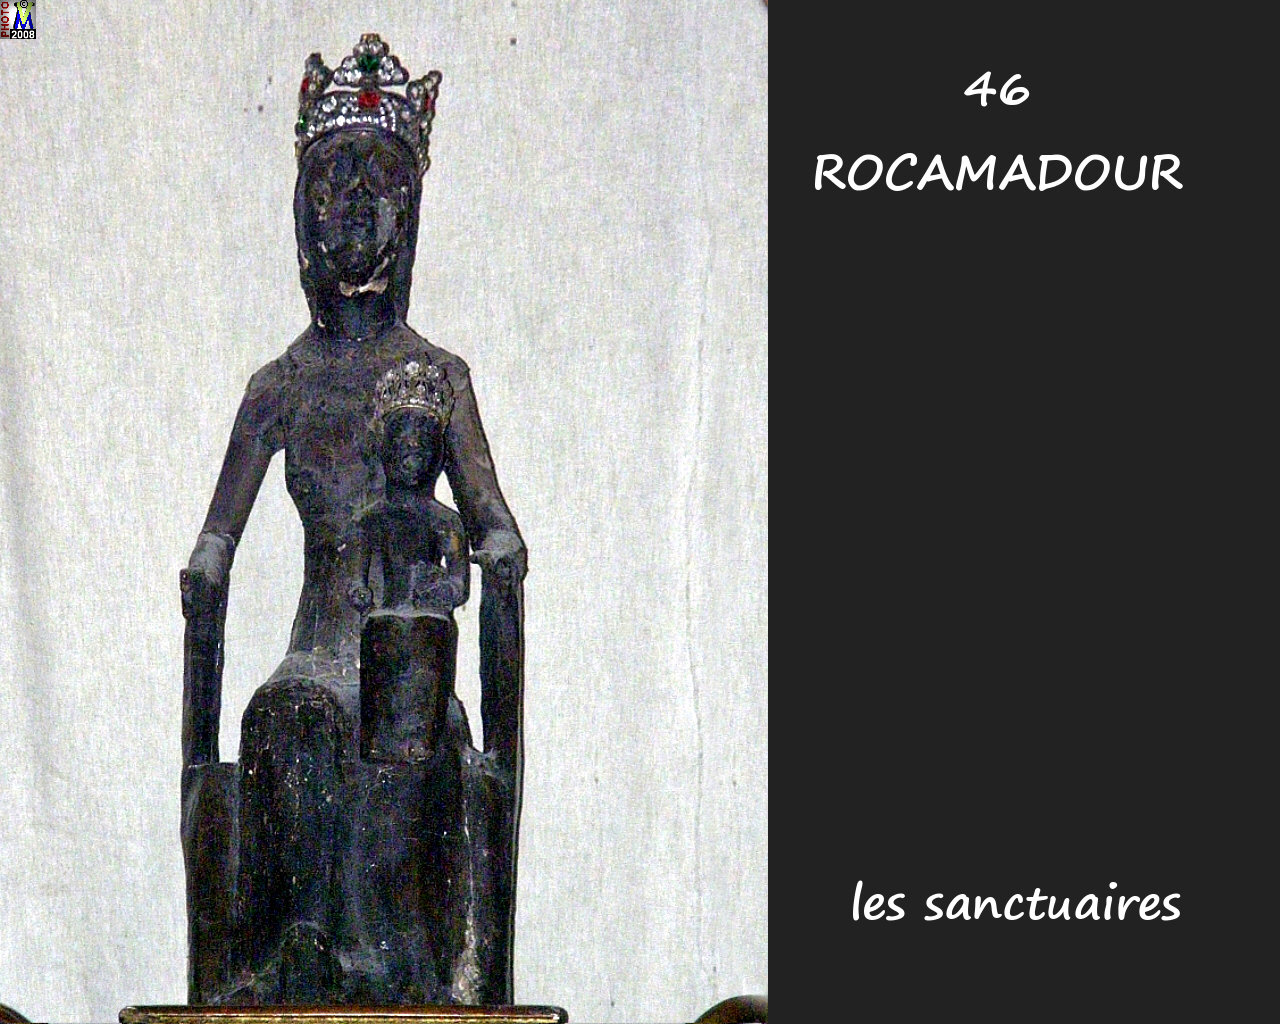 46ROCAMADOUR_sanctuaires_612.jpg